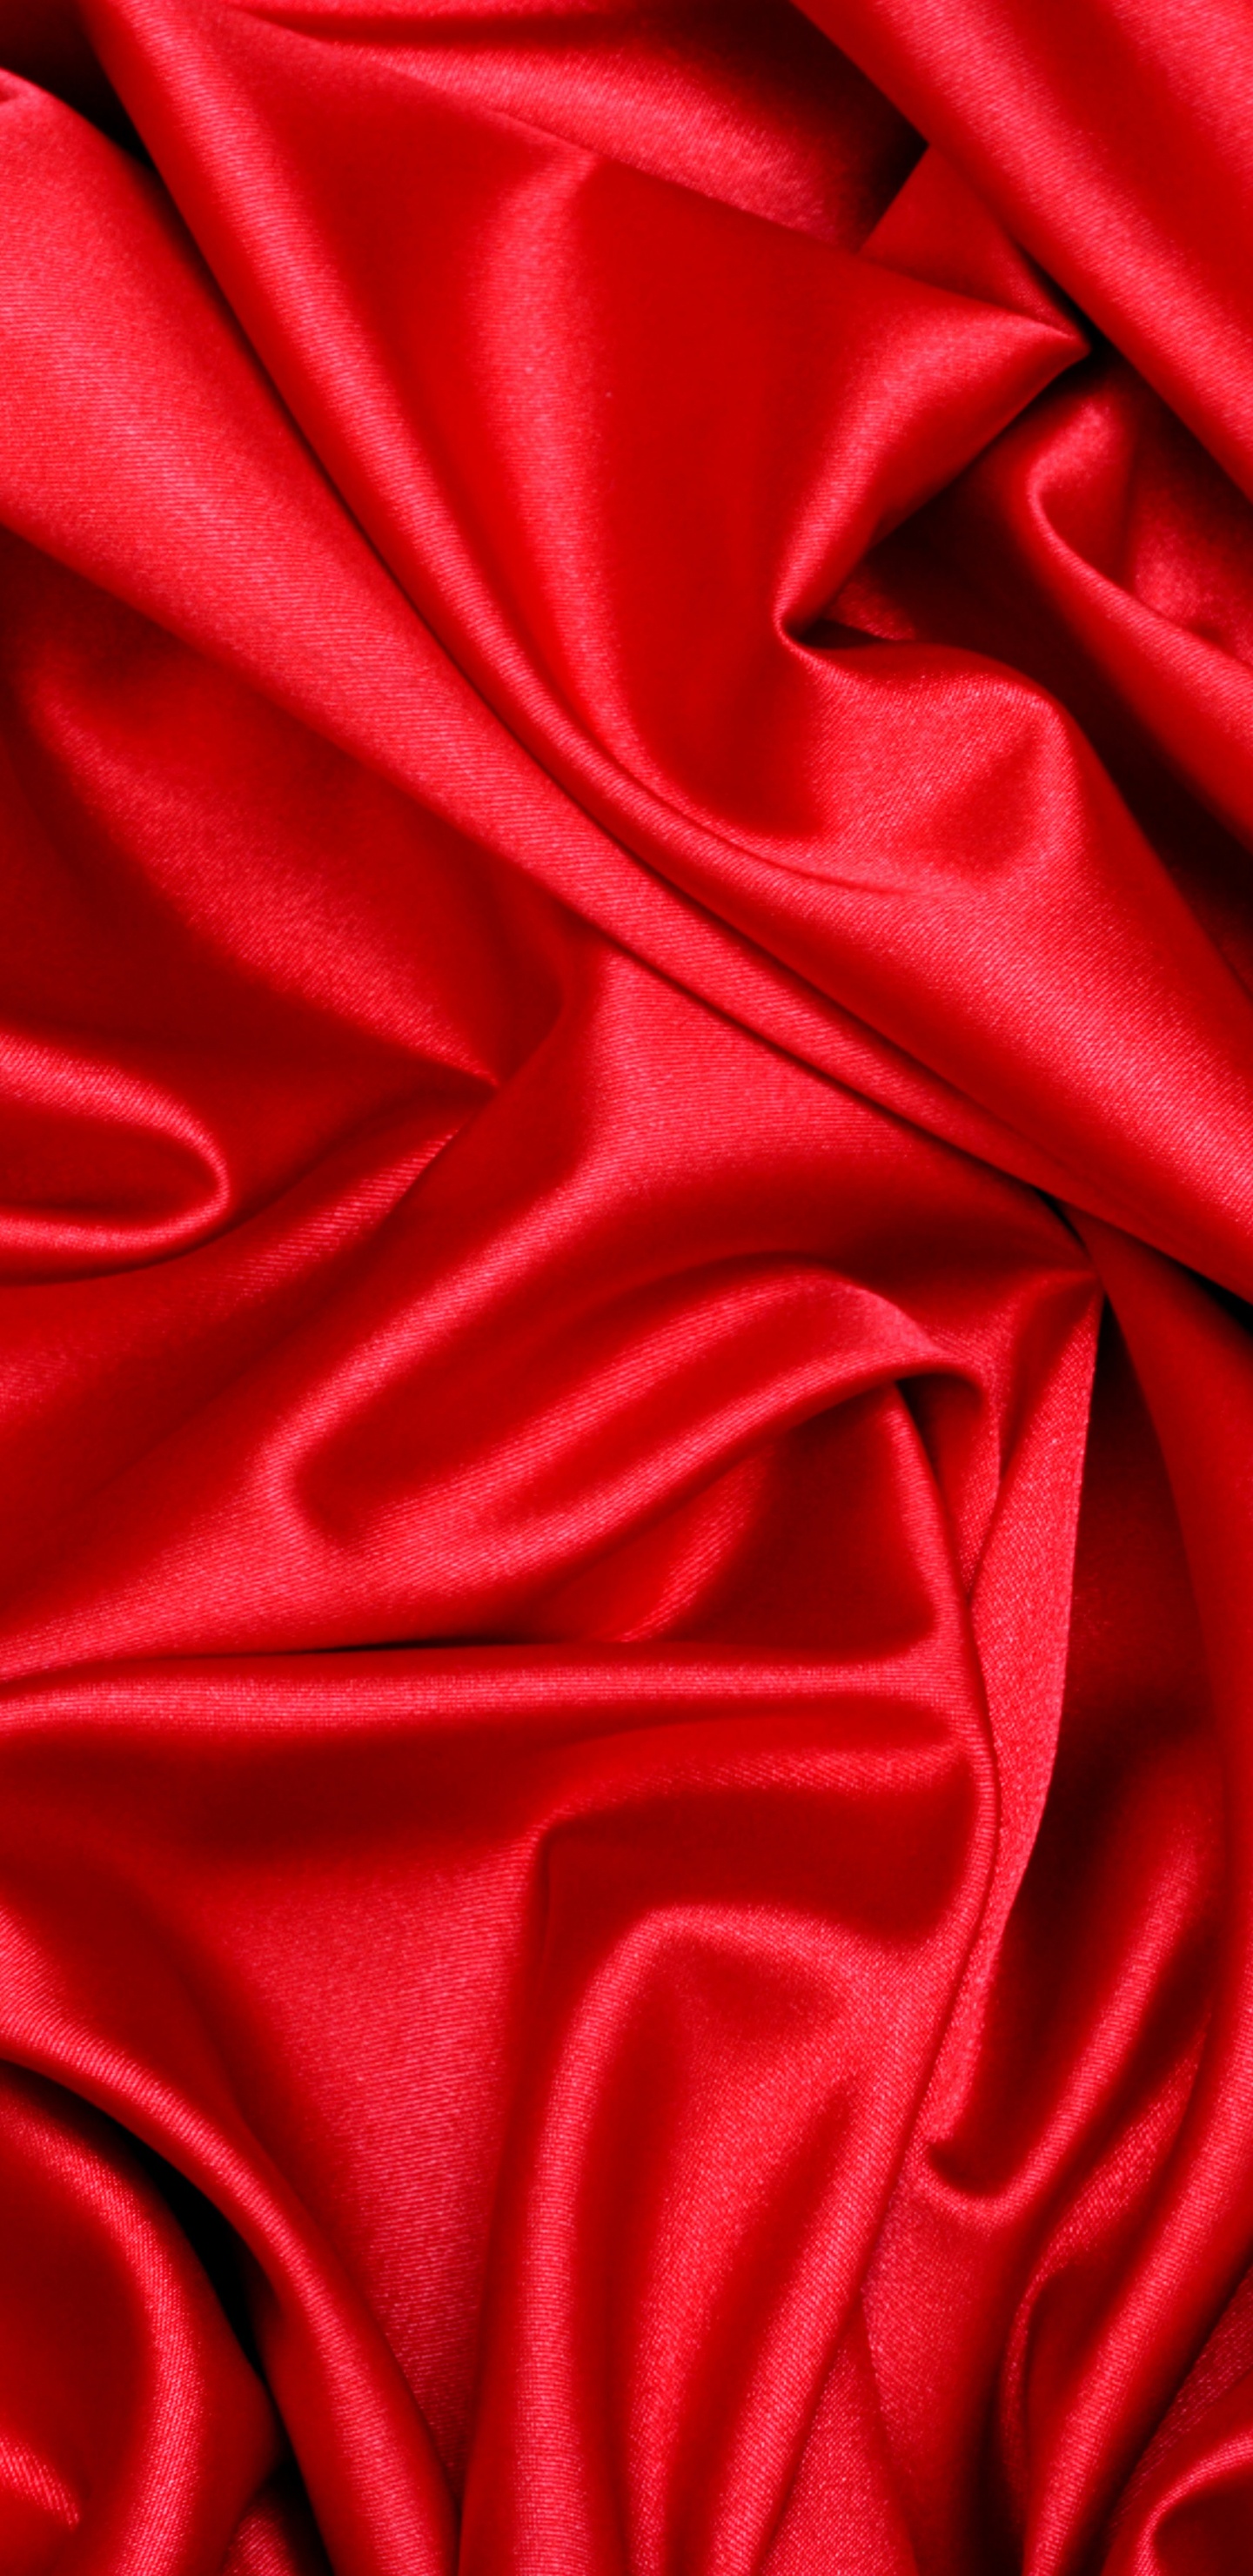 缎面, 丝绸, 红色的, 天鹅绒, 品红色 壁纸 1440x2960 允许